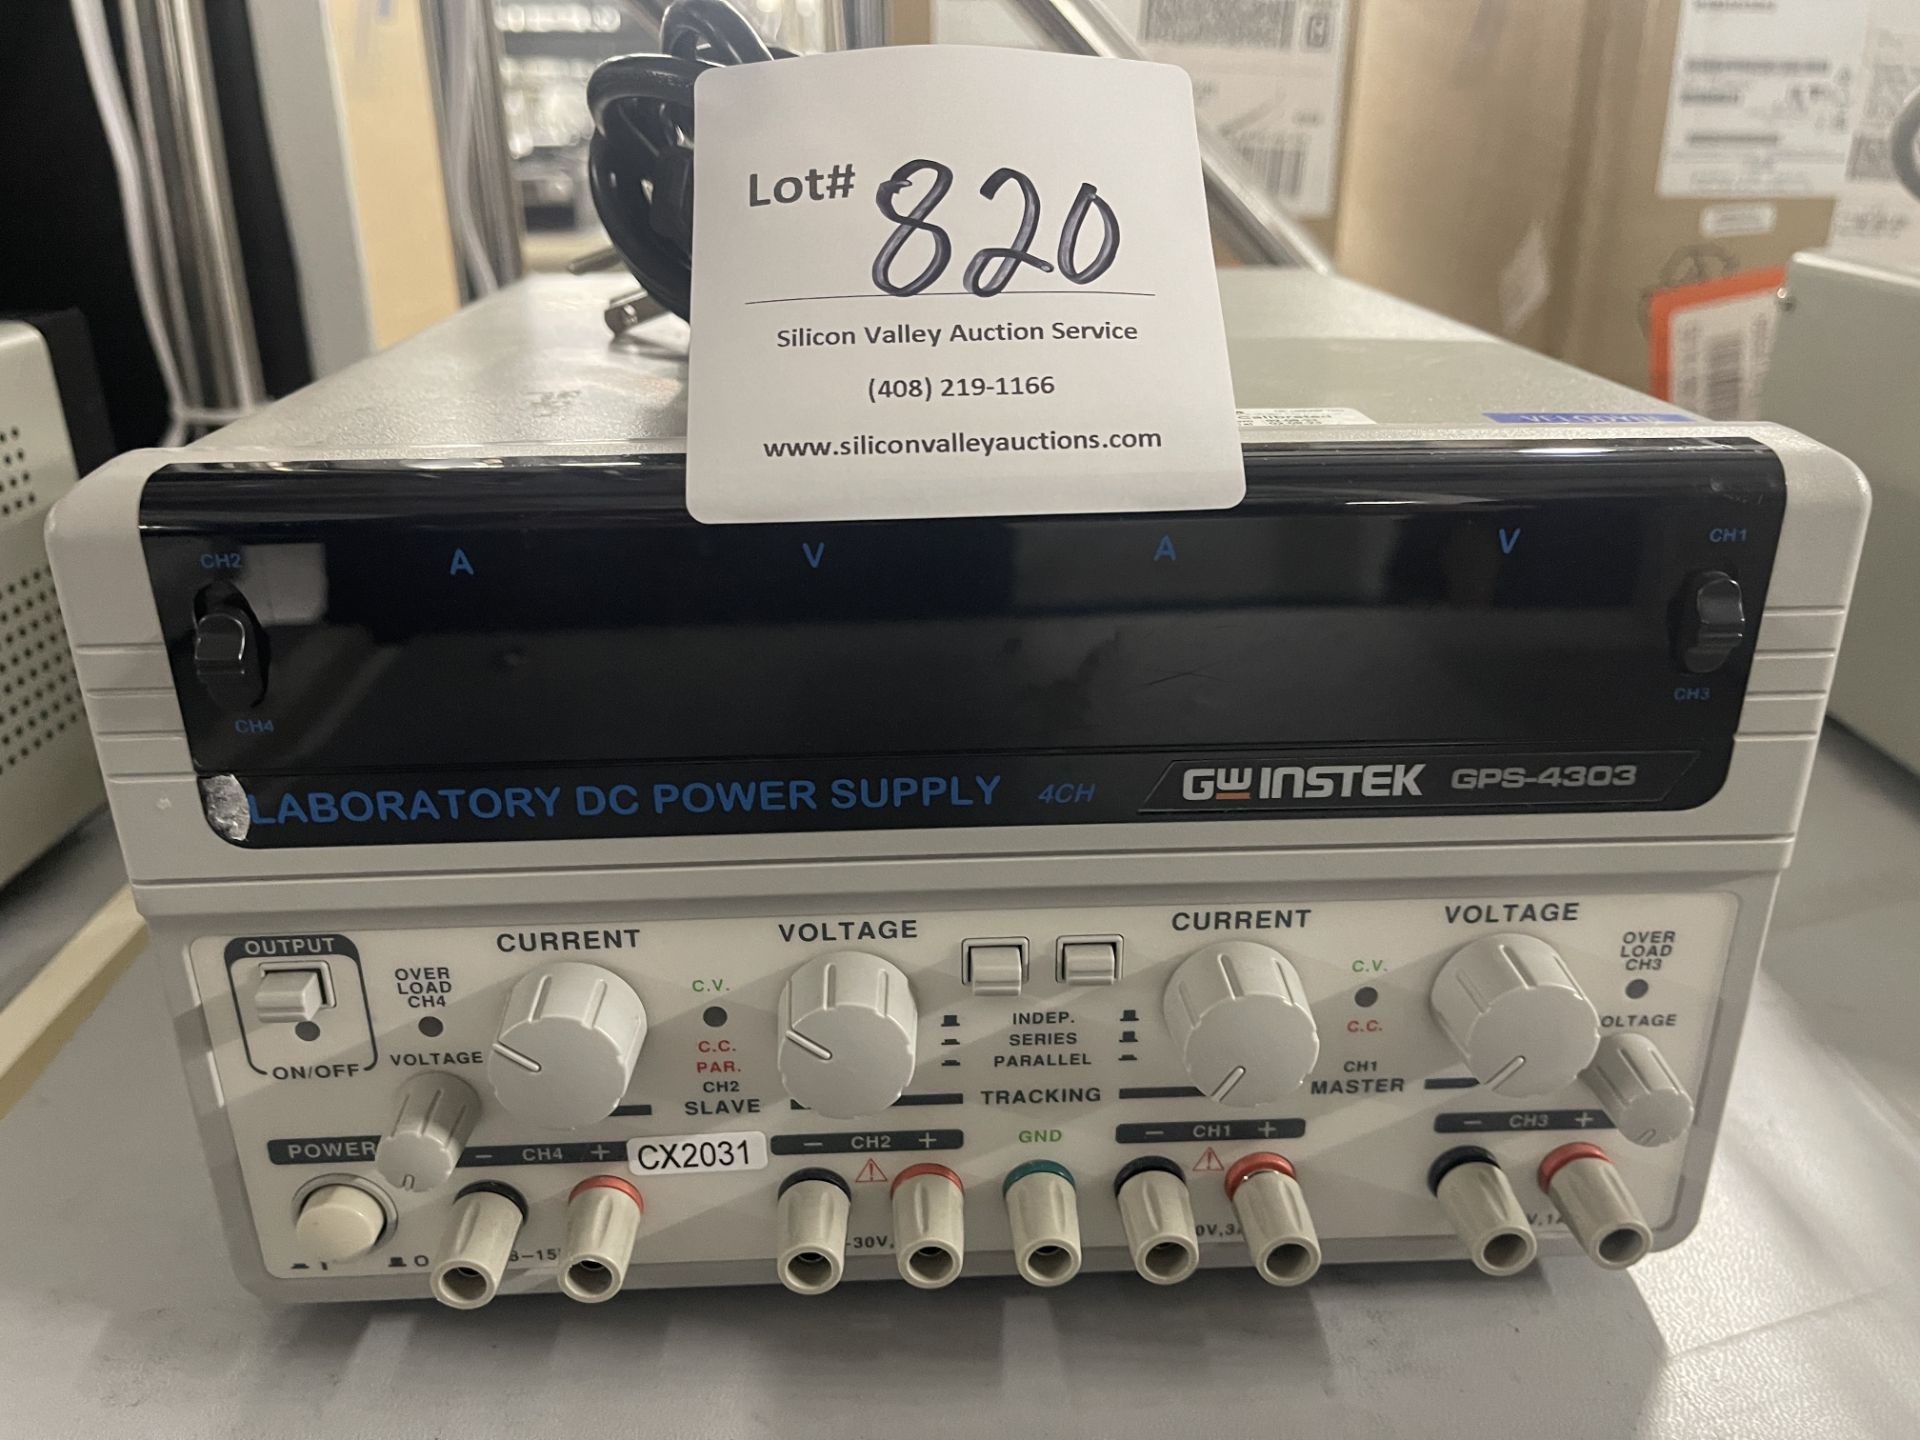 GW Instek GPS-2303 Laboratory DC Power Supply